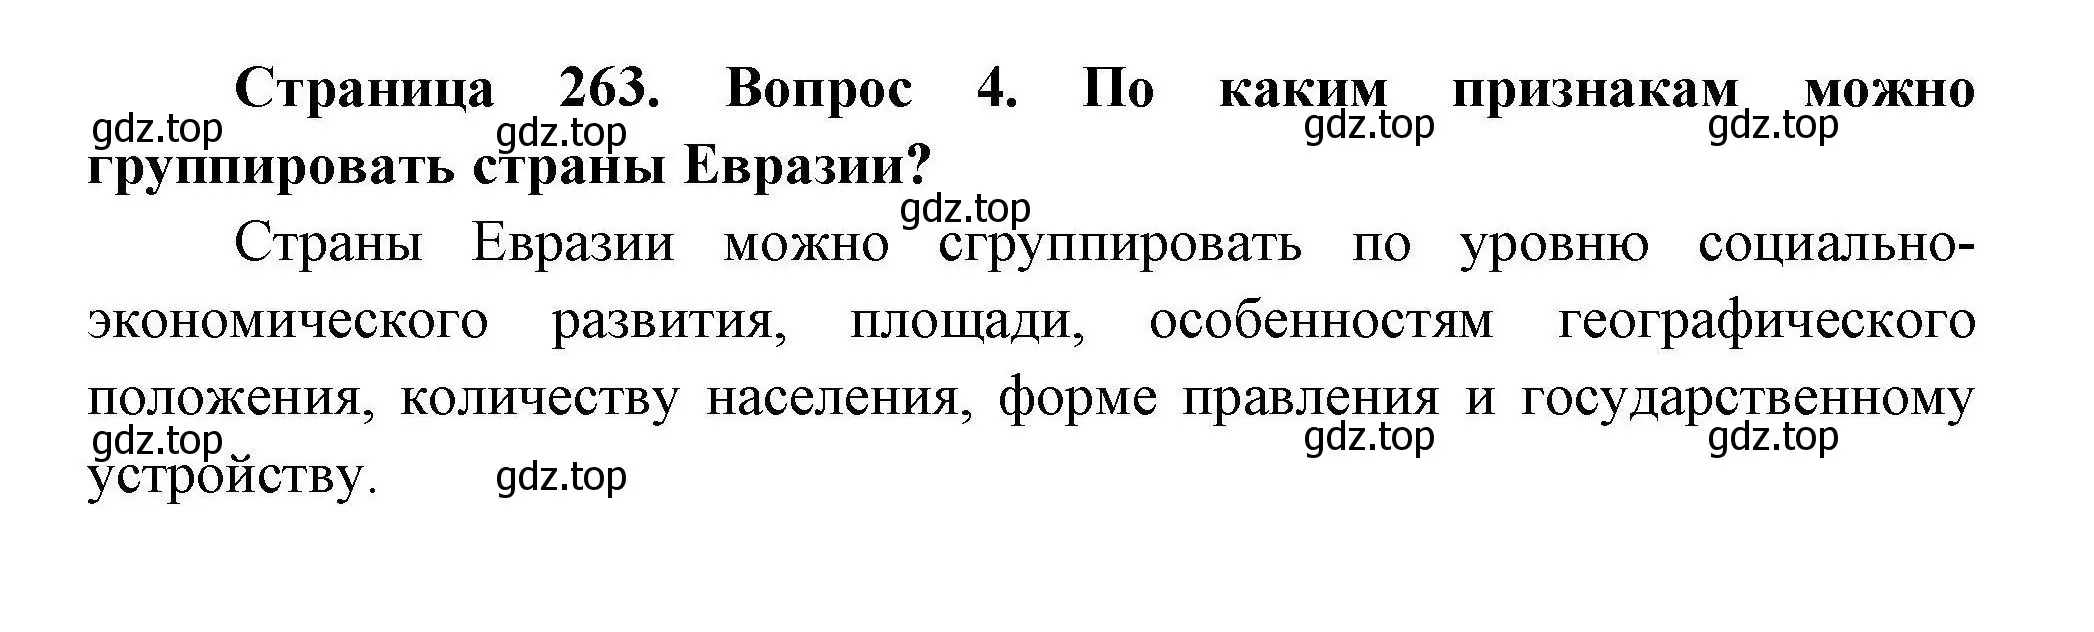 Решение номер 4 (страница 263) гдз по географии 7 класс Коринская, Душина, учебник